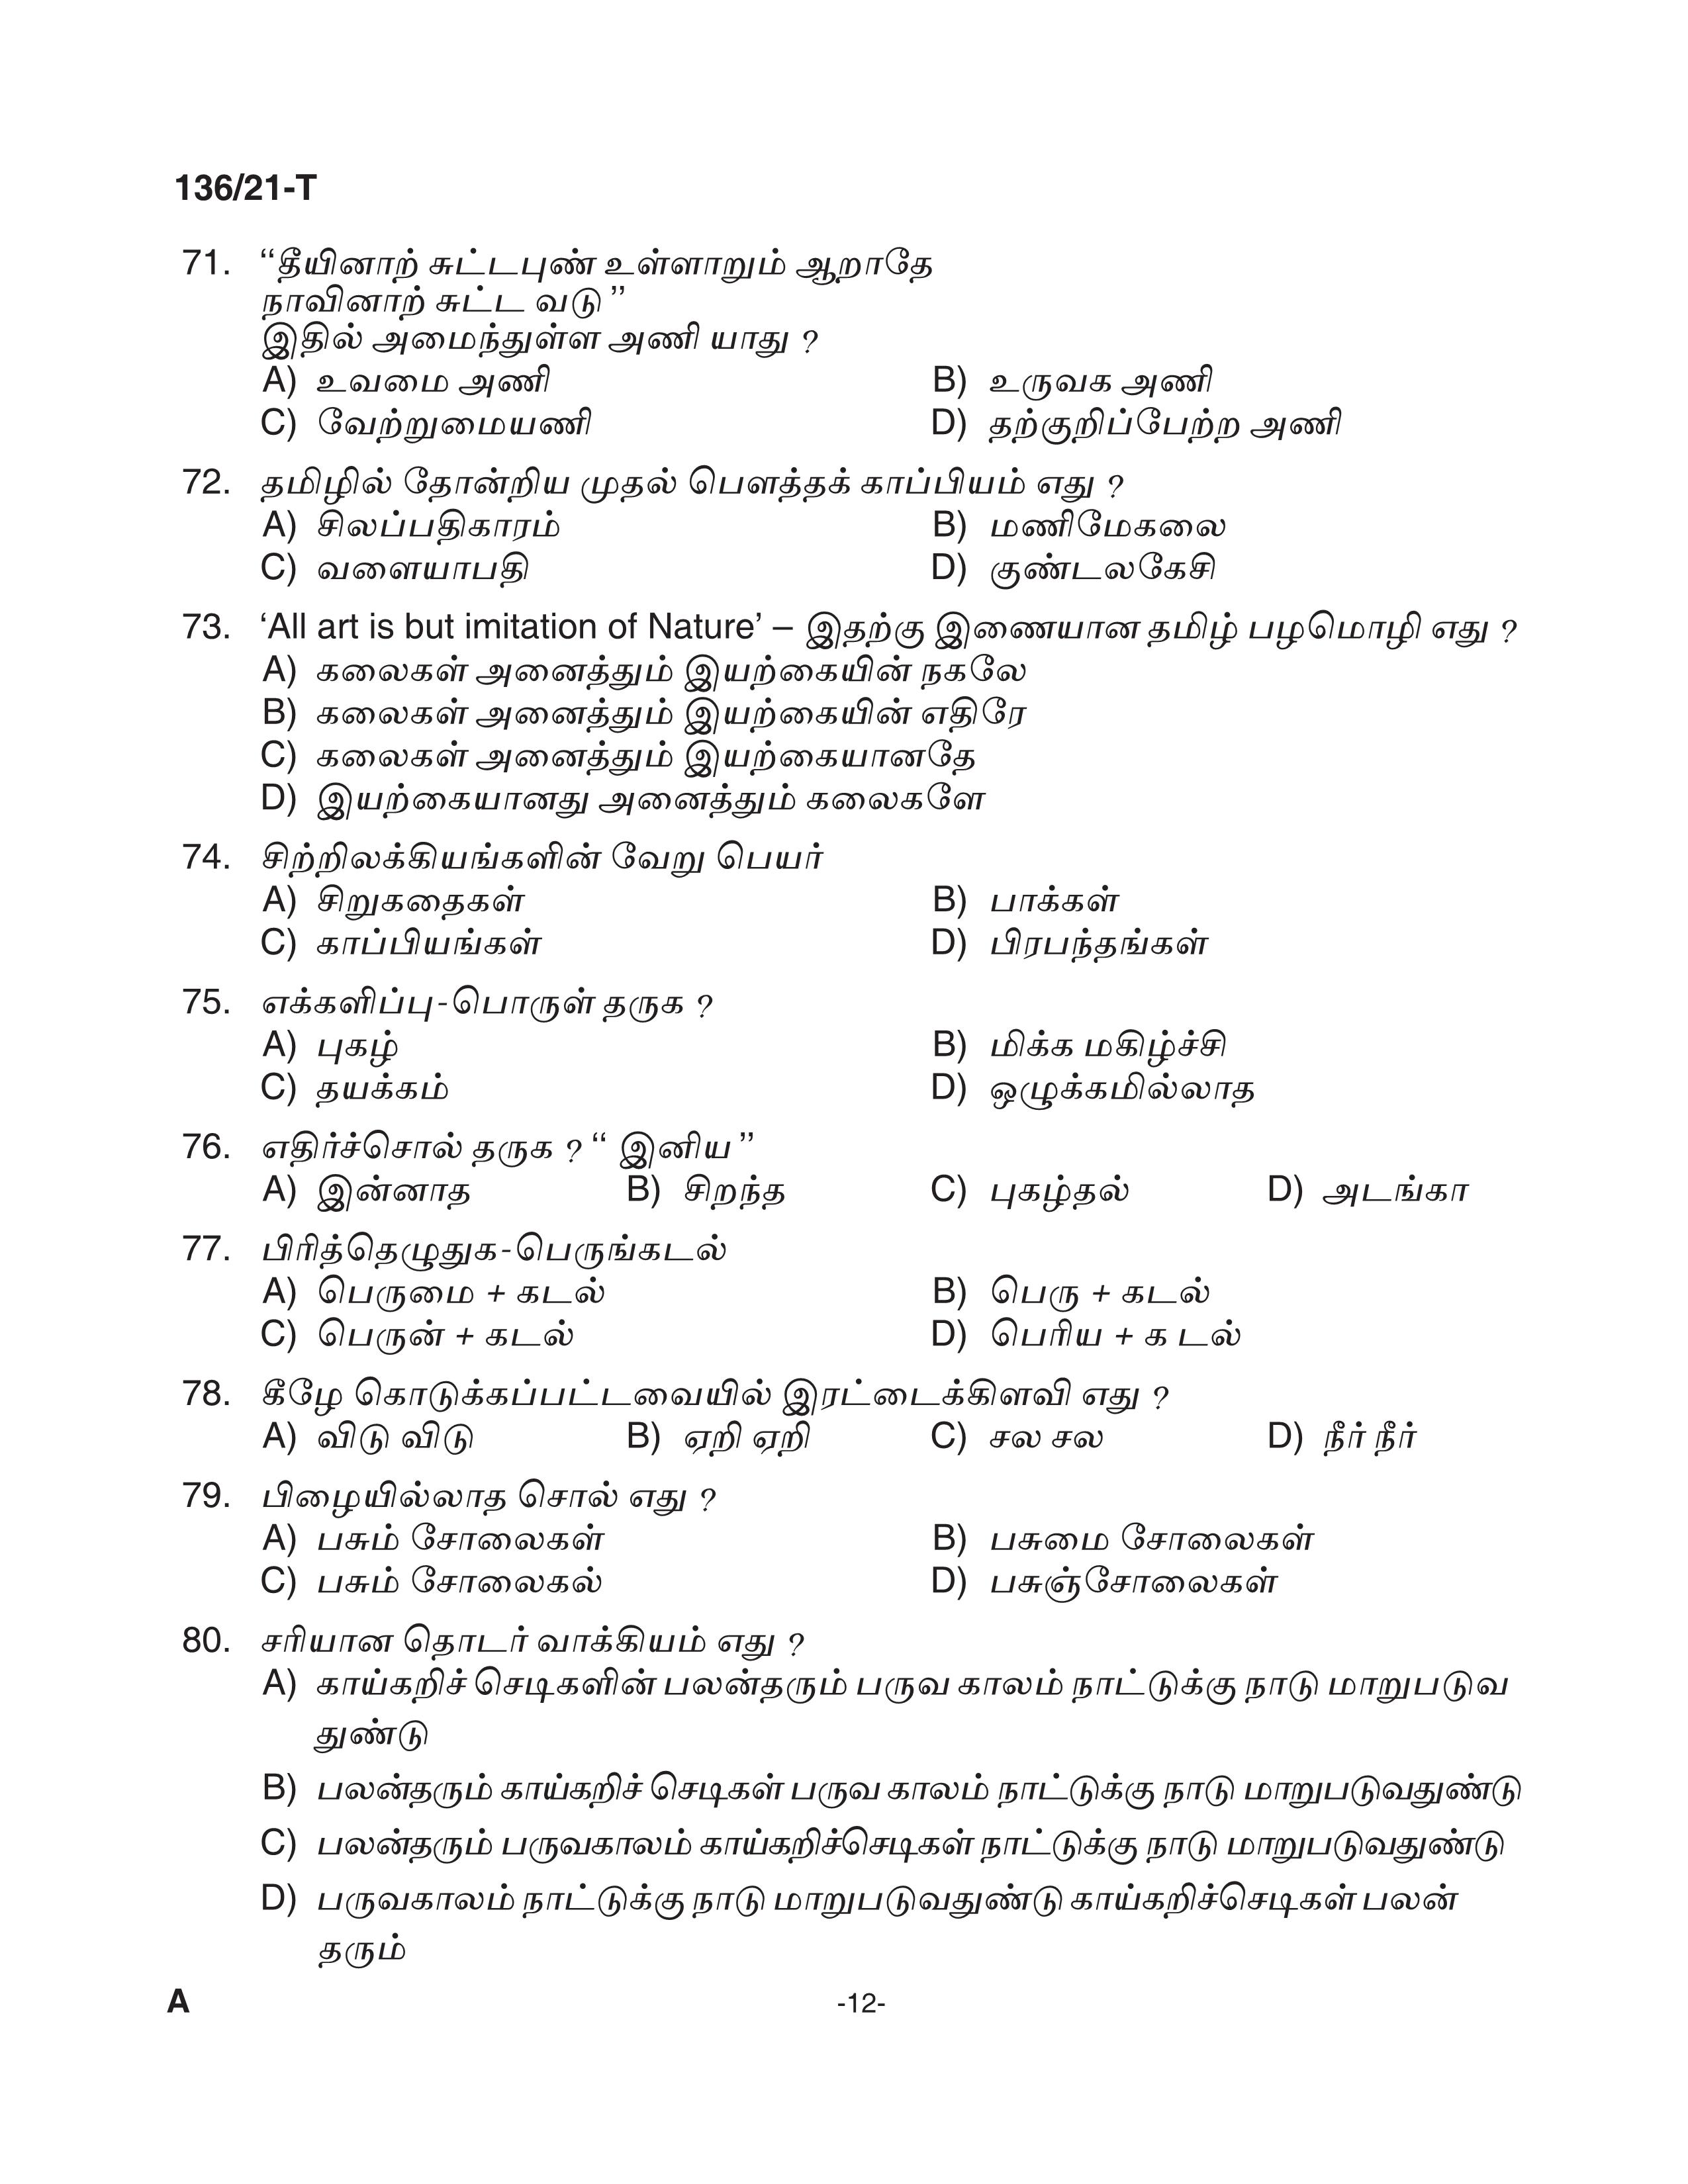 KPSC Village Extension Officer Tamil Exam 2021 Code 1362021 T 11